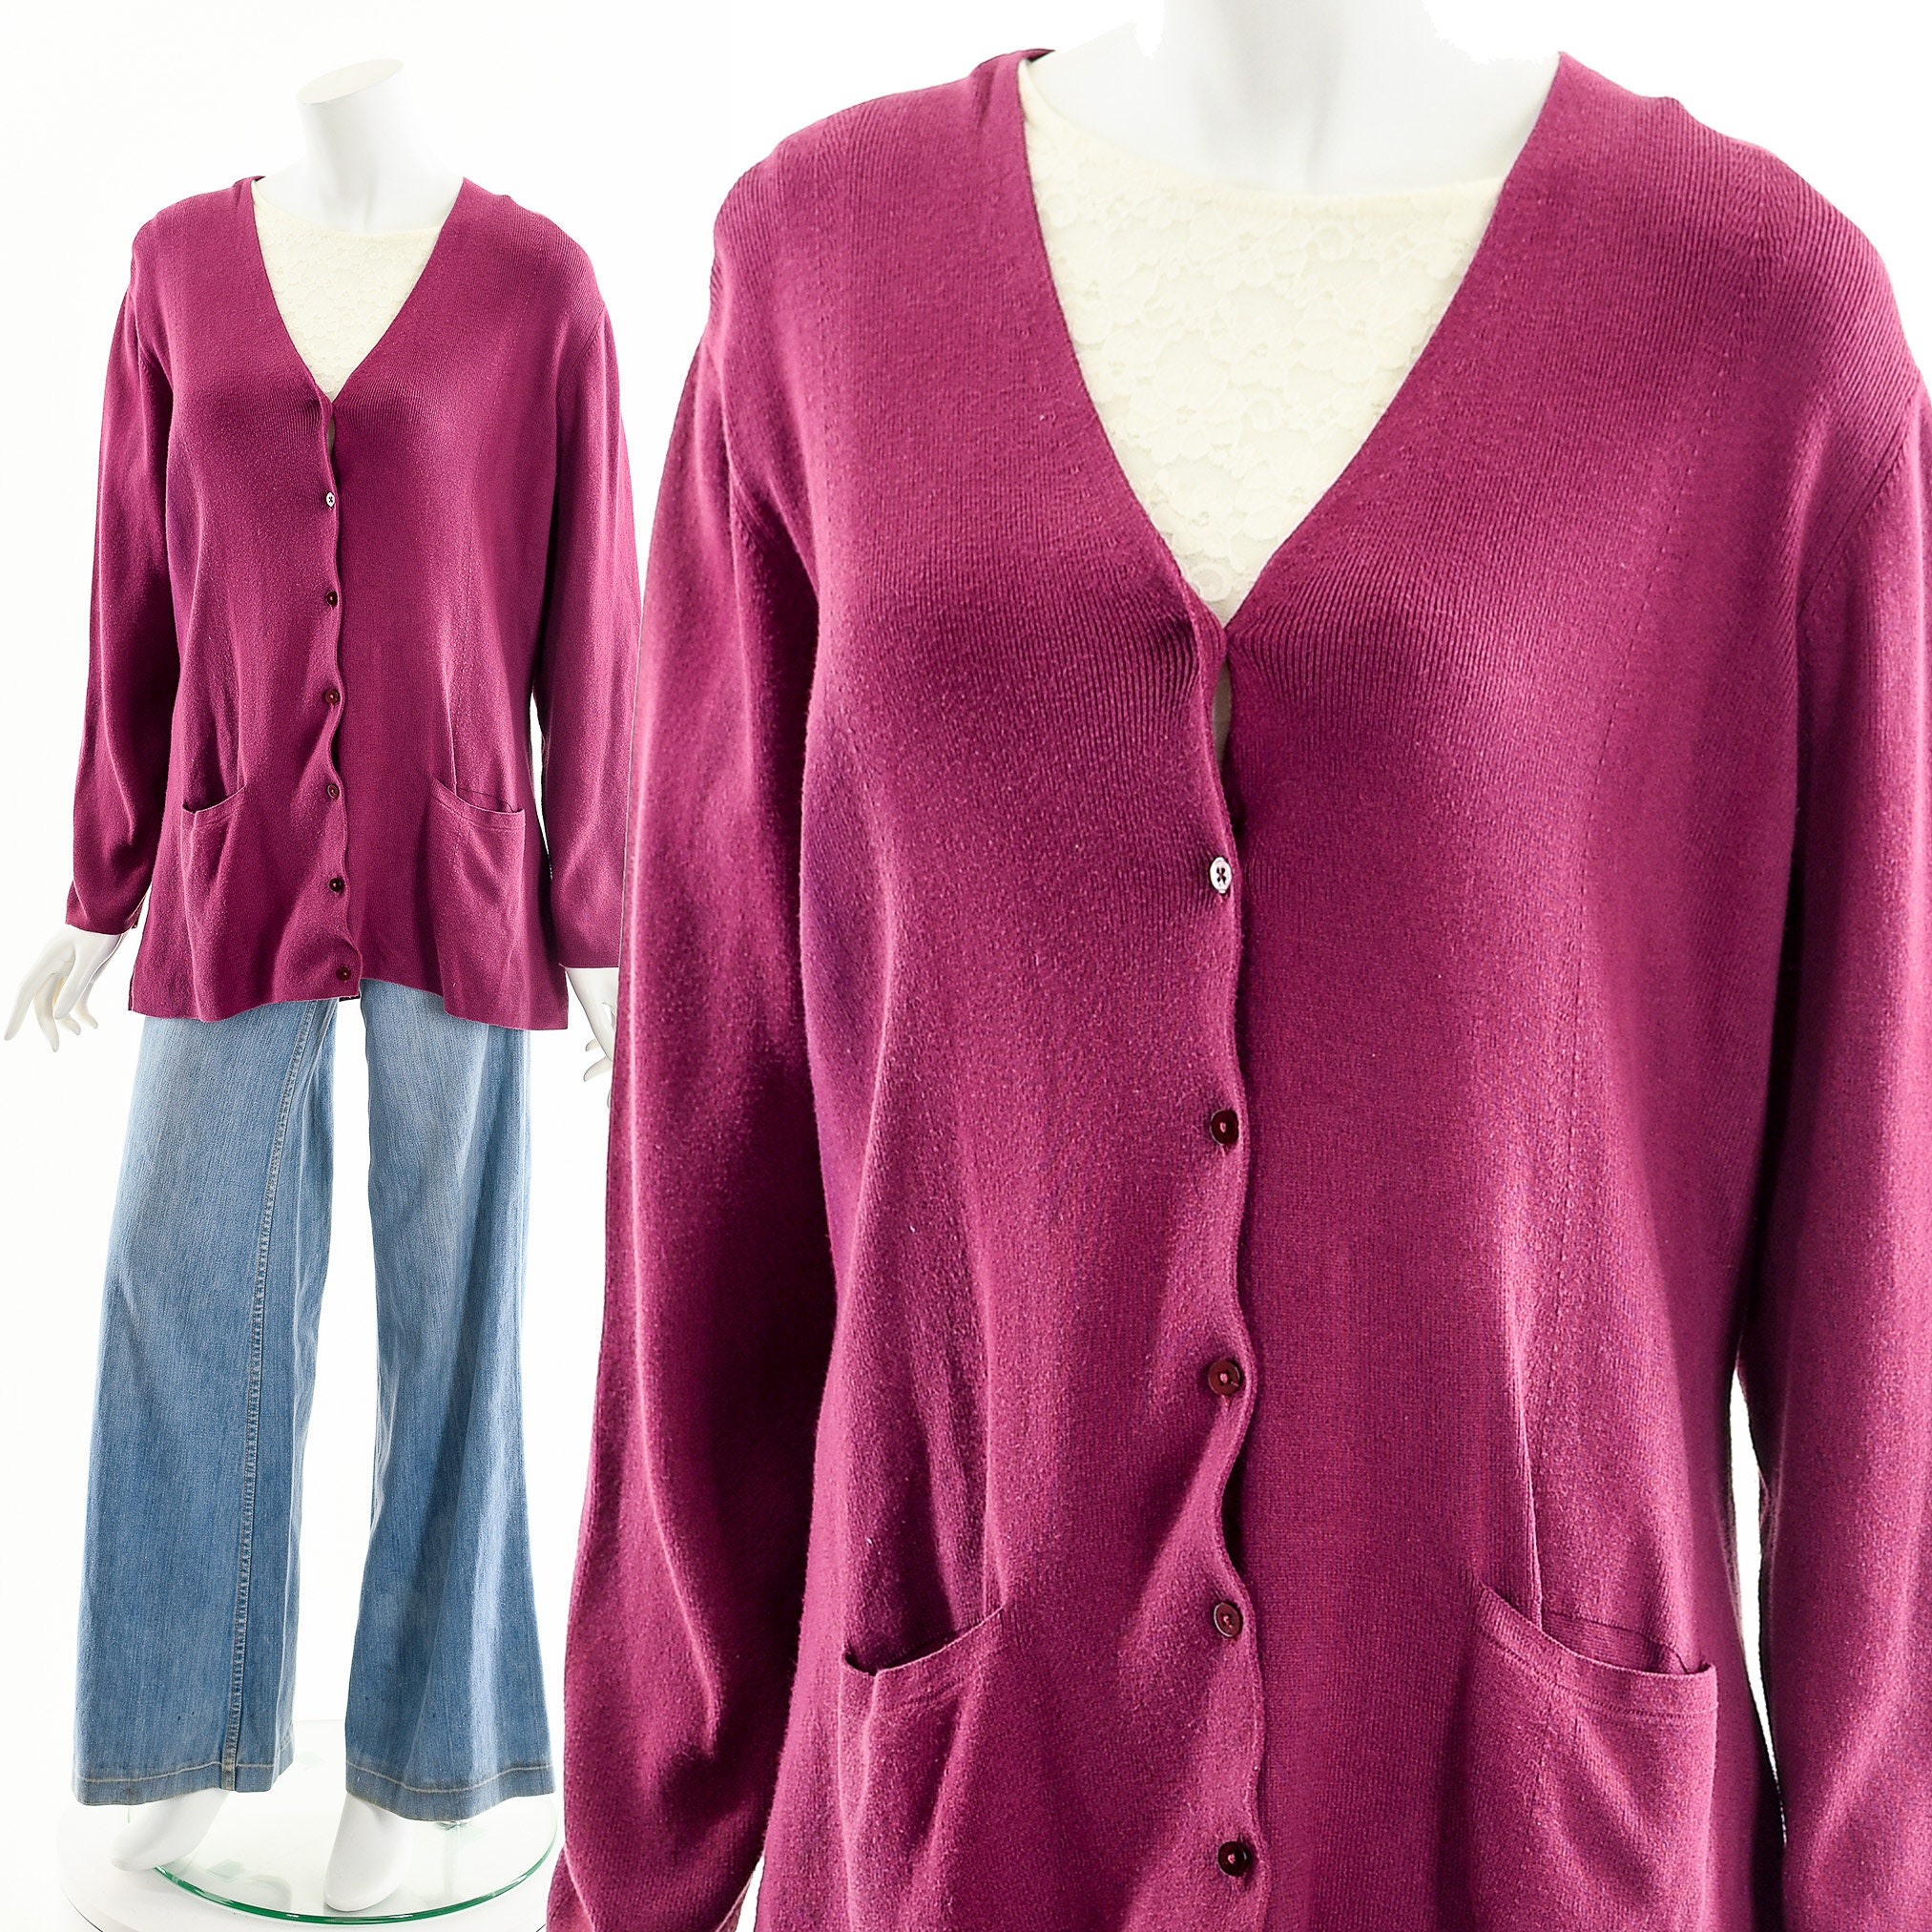 Kleding Dameskleding Sweaters Vesten Preloved Capsule garderobe stuk Fuzzy Sweater Delias Pink Button Down Vest| Fuchsia Trui Y2K Clueless Geïnspireerde 